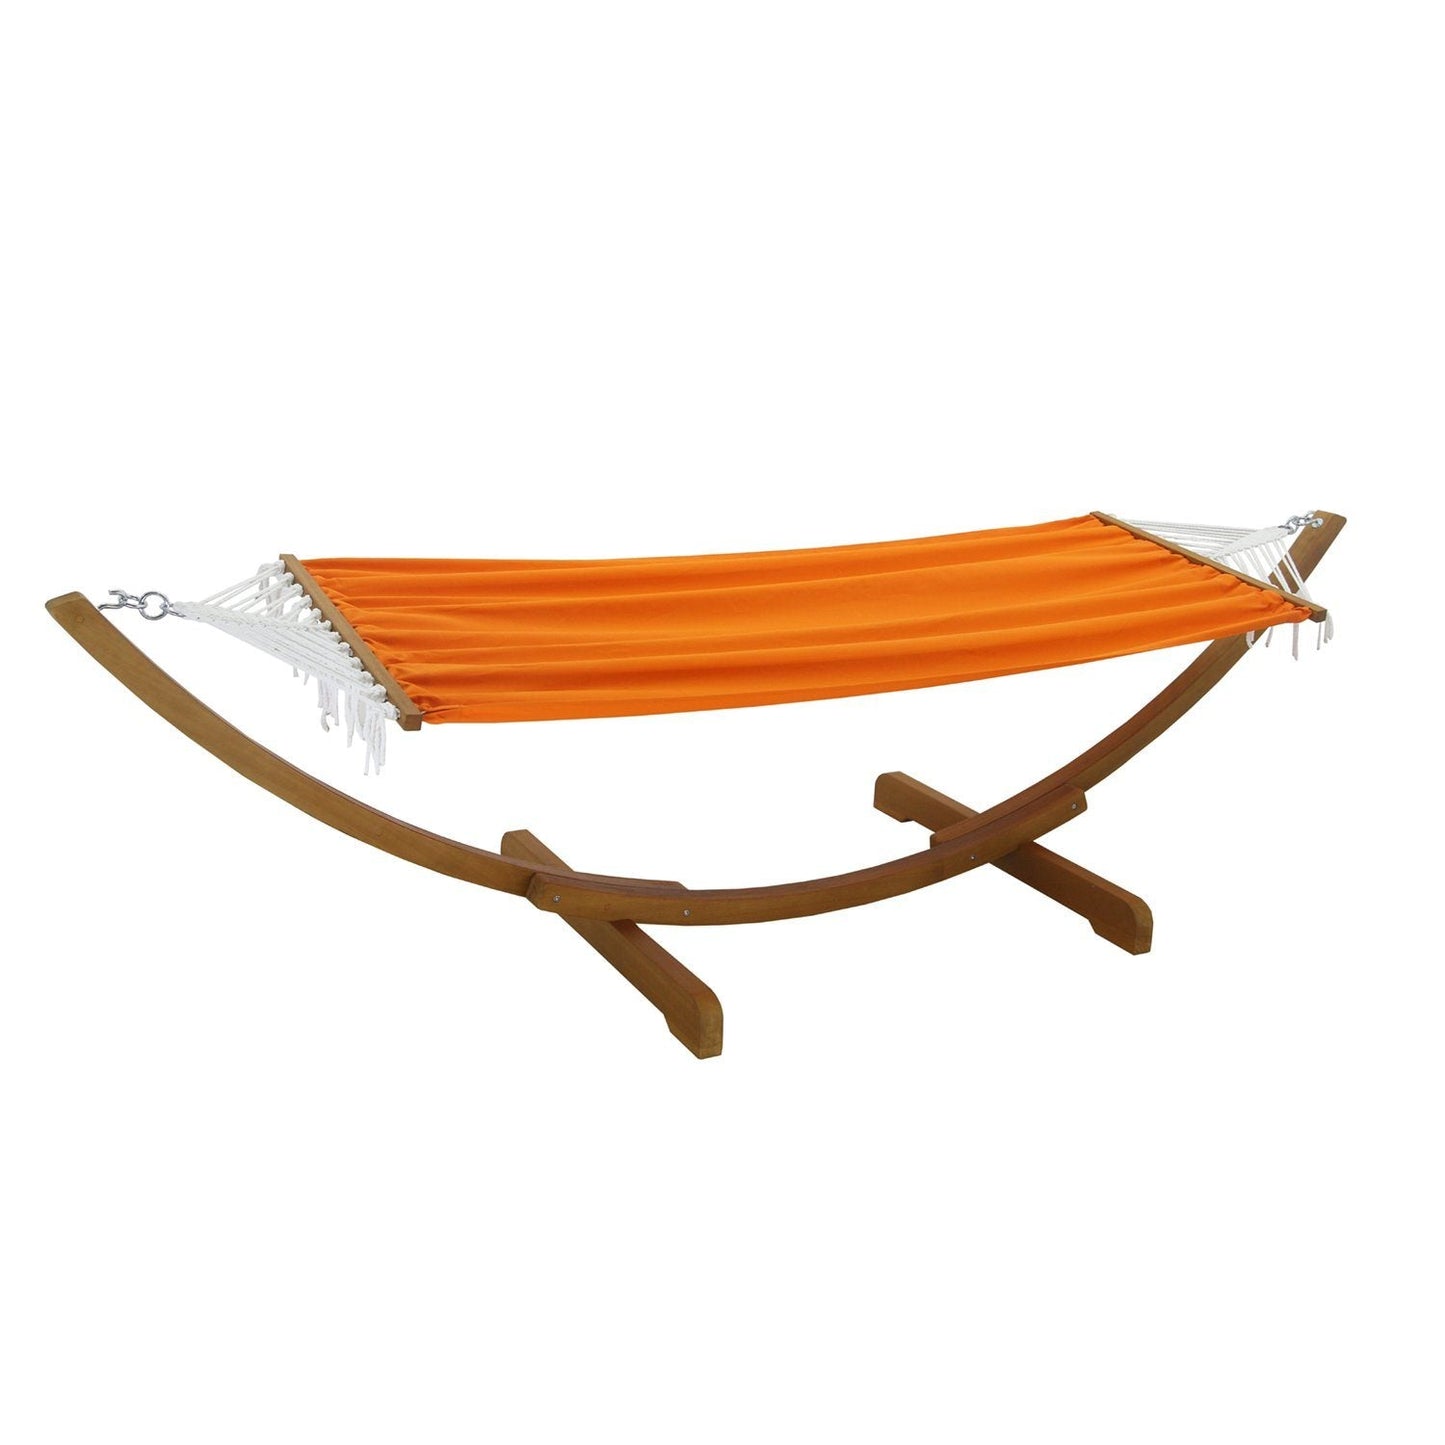 Lulu hammock - solid wood - orange